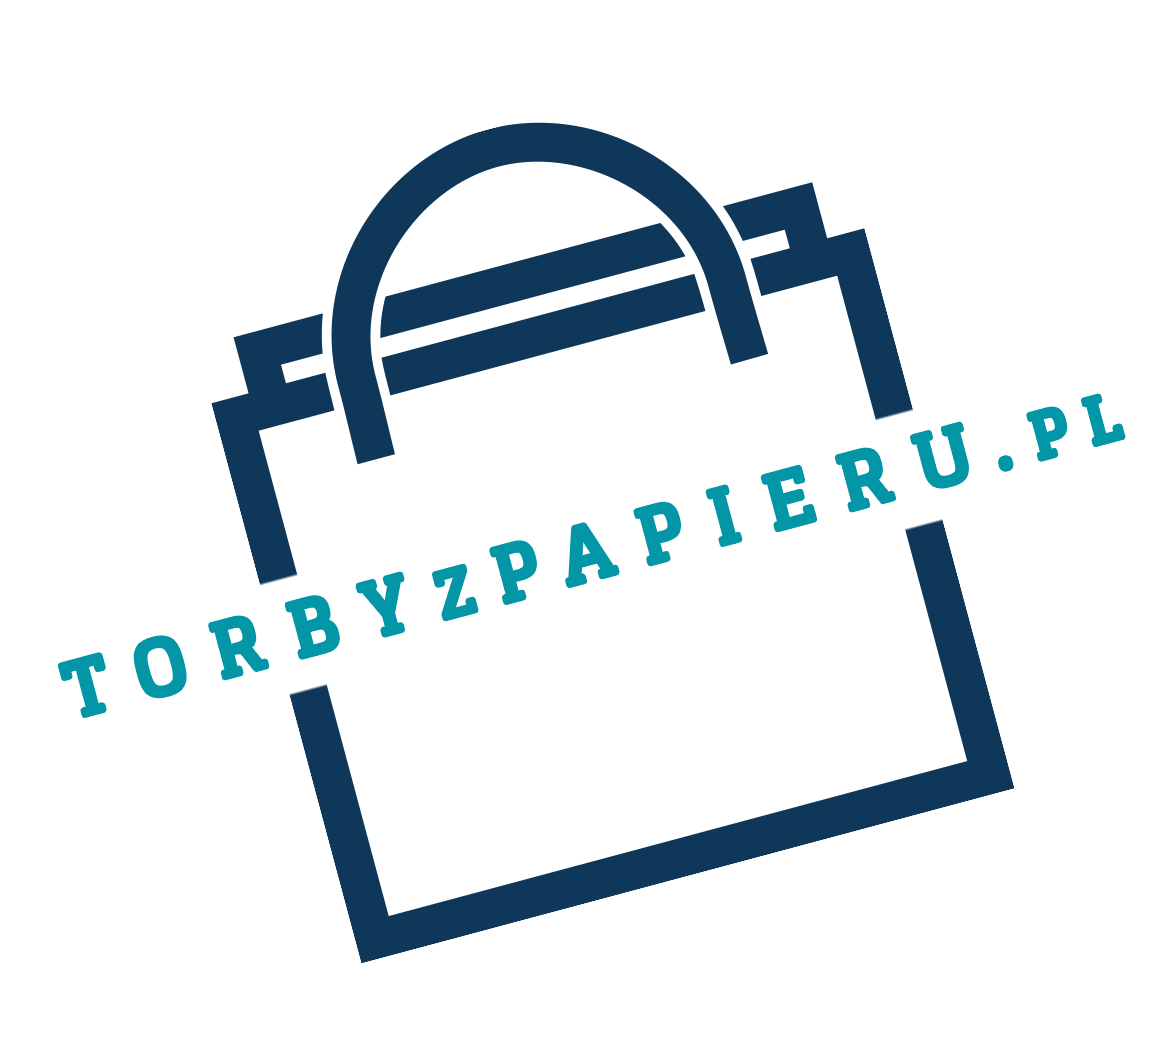 Torby papierowe z nadrukiem - Torbyzpapieru.pl